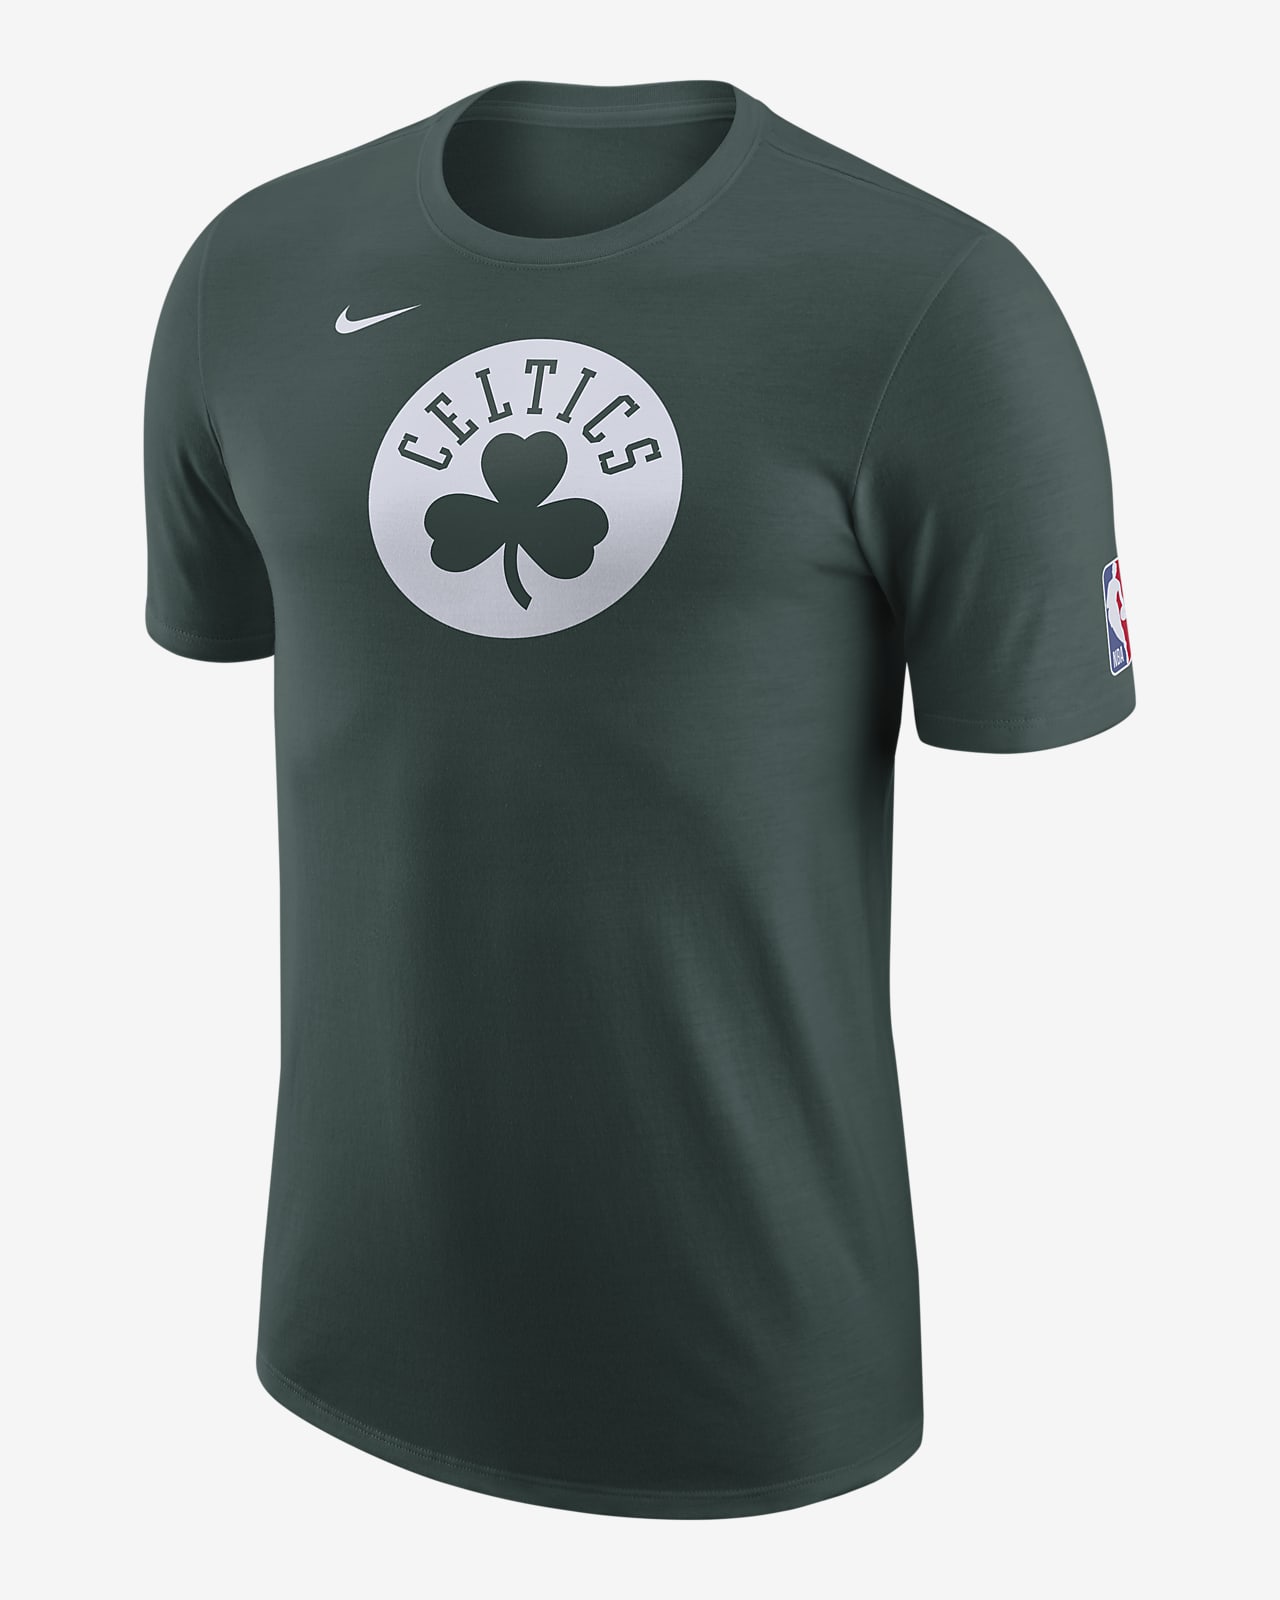 Celtics Essential City Camiseta Nike NBA - Hombre. Nike ES